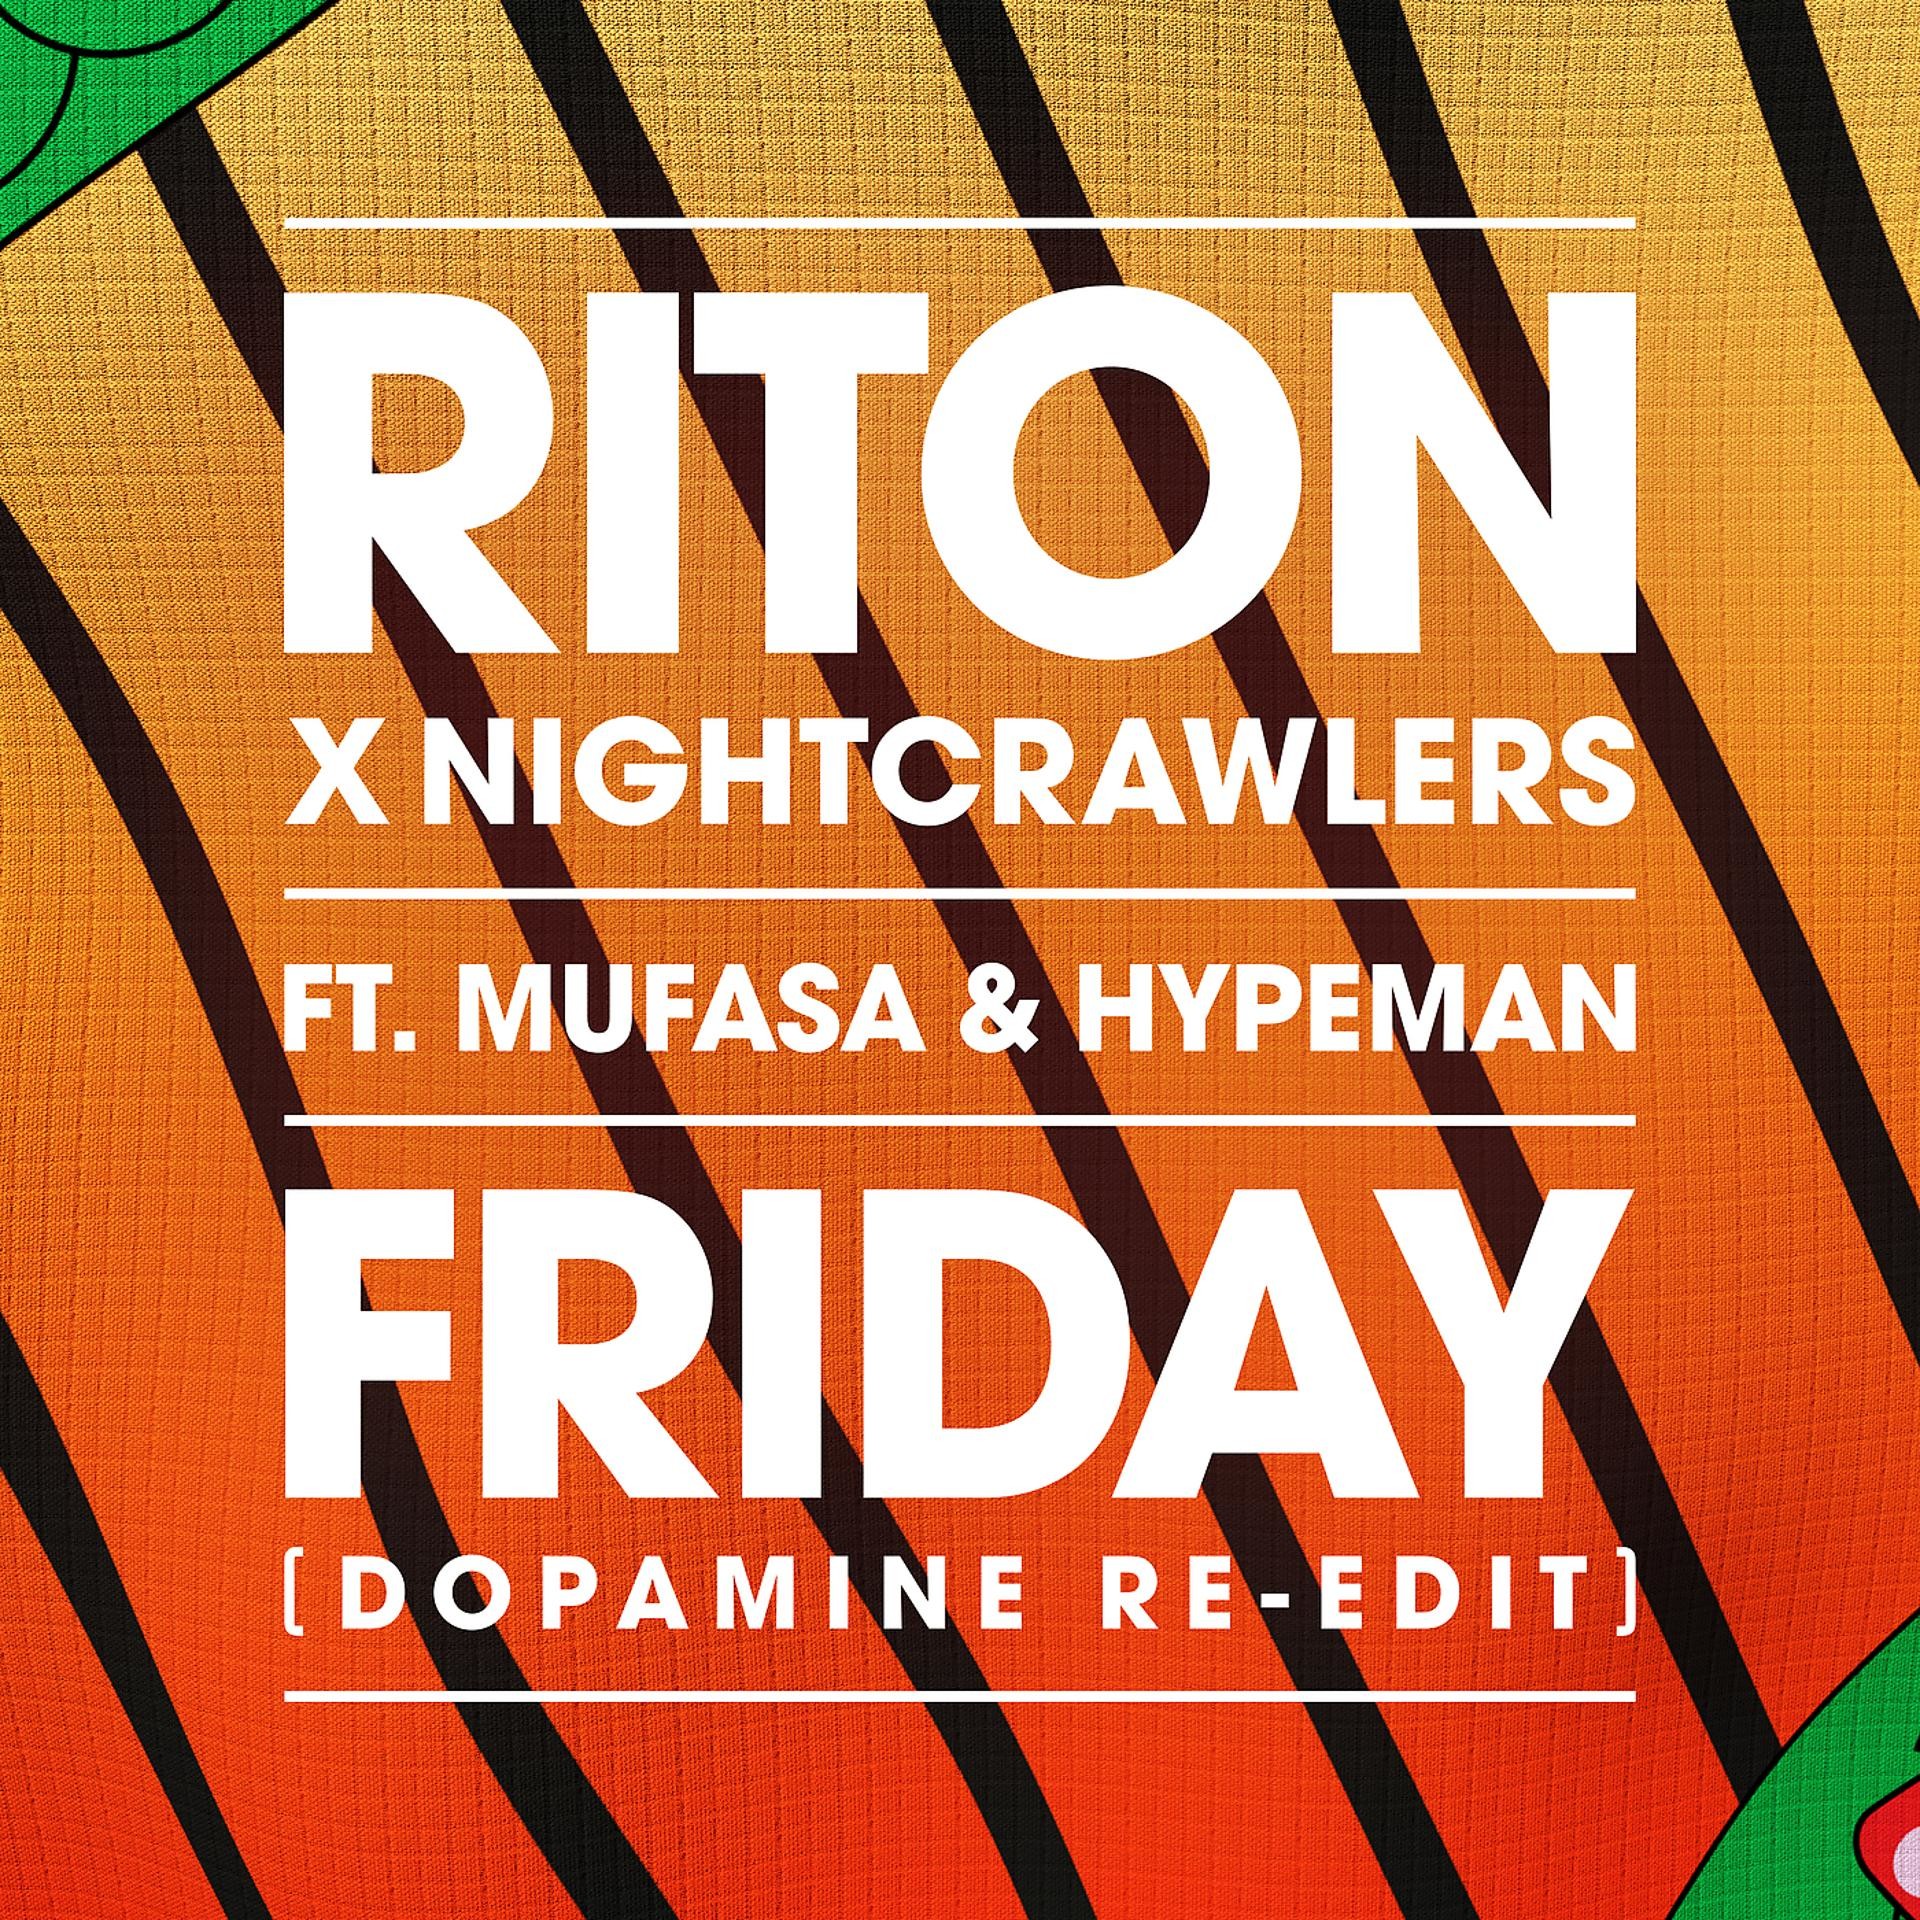 Friday Riton Nightcrawlers. Riton_Nightcrawlers_Mufasa_Hypeman_-_Friday. Riton, Nightcrawlers feat. Mufasa & Hypeman - Friday. Nightcrawlers, Mufasa, Hypeman - Friday.